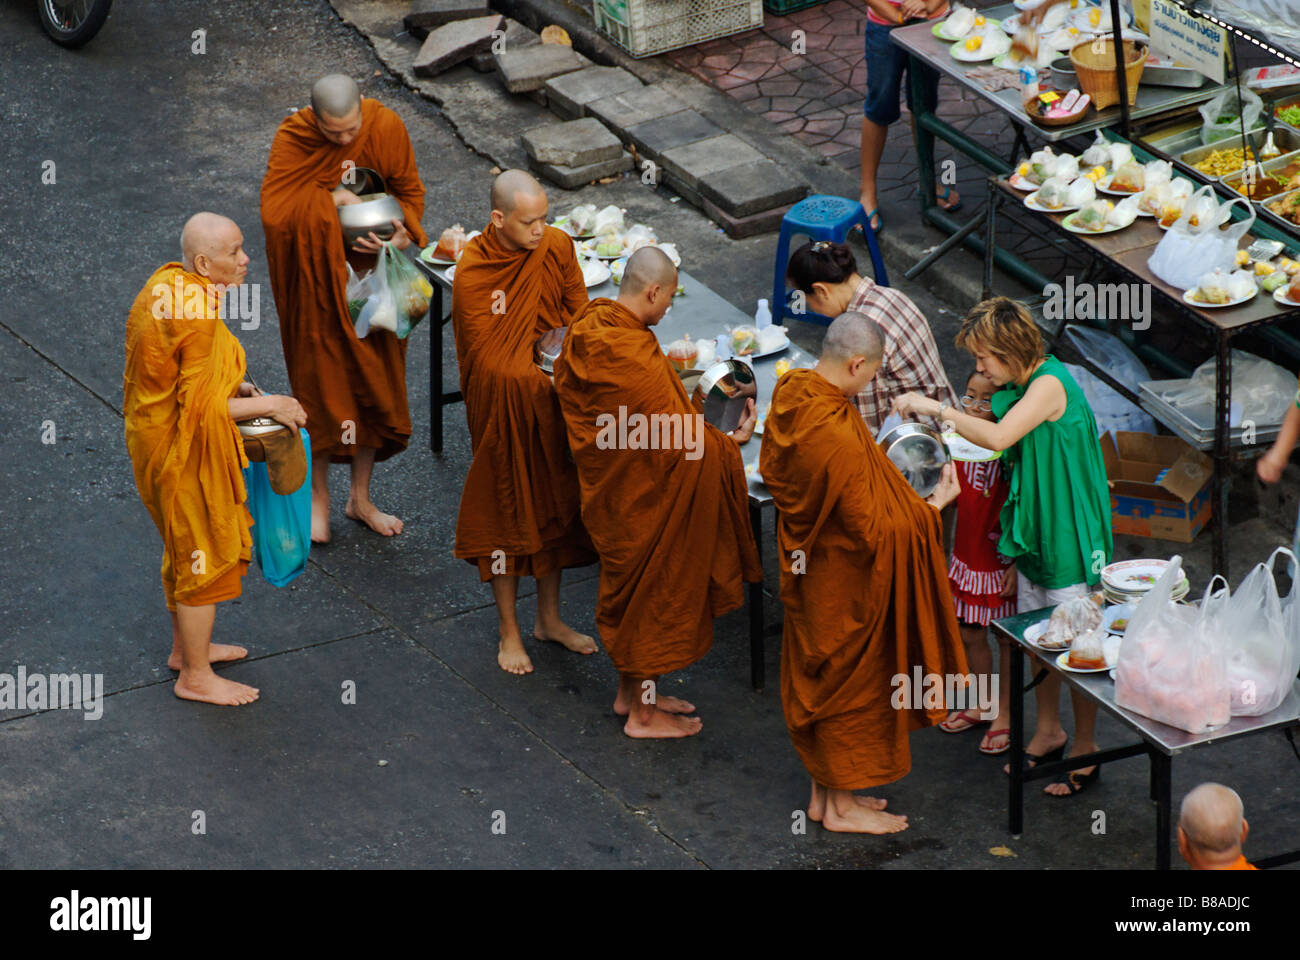 Les moines bouddhistes recevant l'aumône de nourriture tôt le matin, le centre de Bangkok Thaïlande Banglamphu Banque D'Images